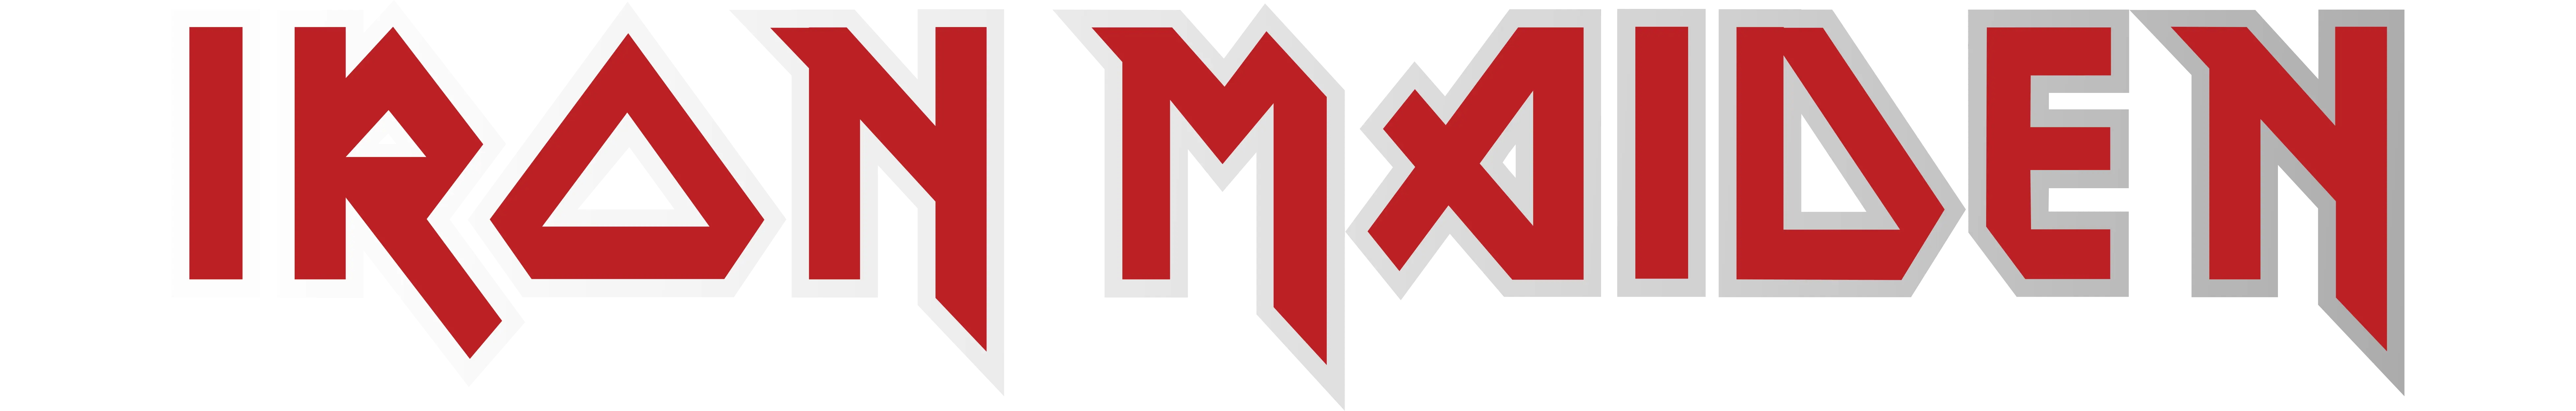 Логотип группы Iron Maiden